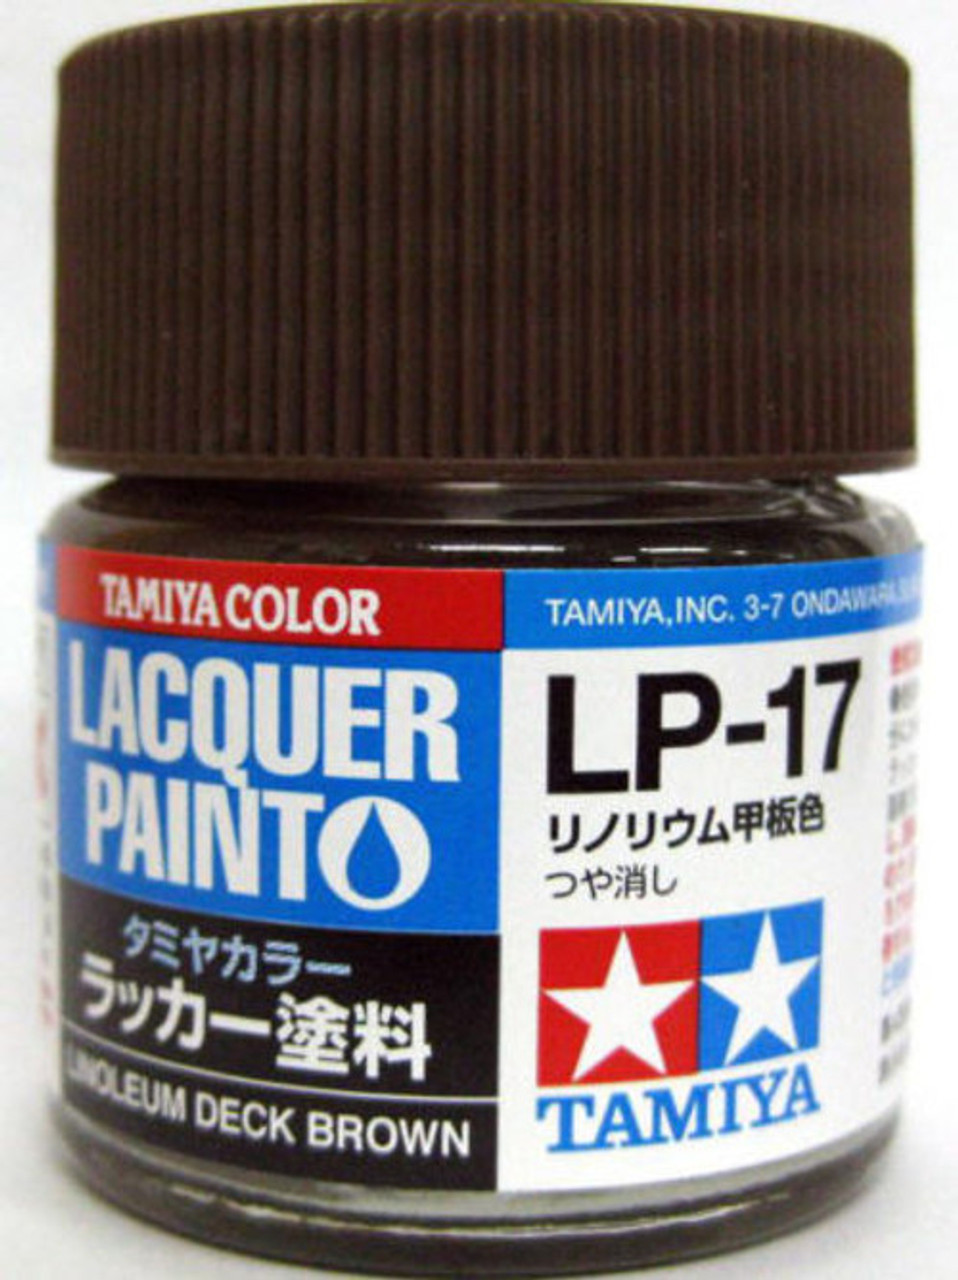 Tamiya 82117 Lacquer Paint LP-17 Linoleum Deck Brown 10ml Bottle